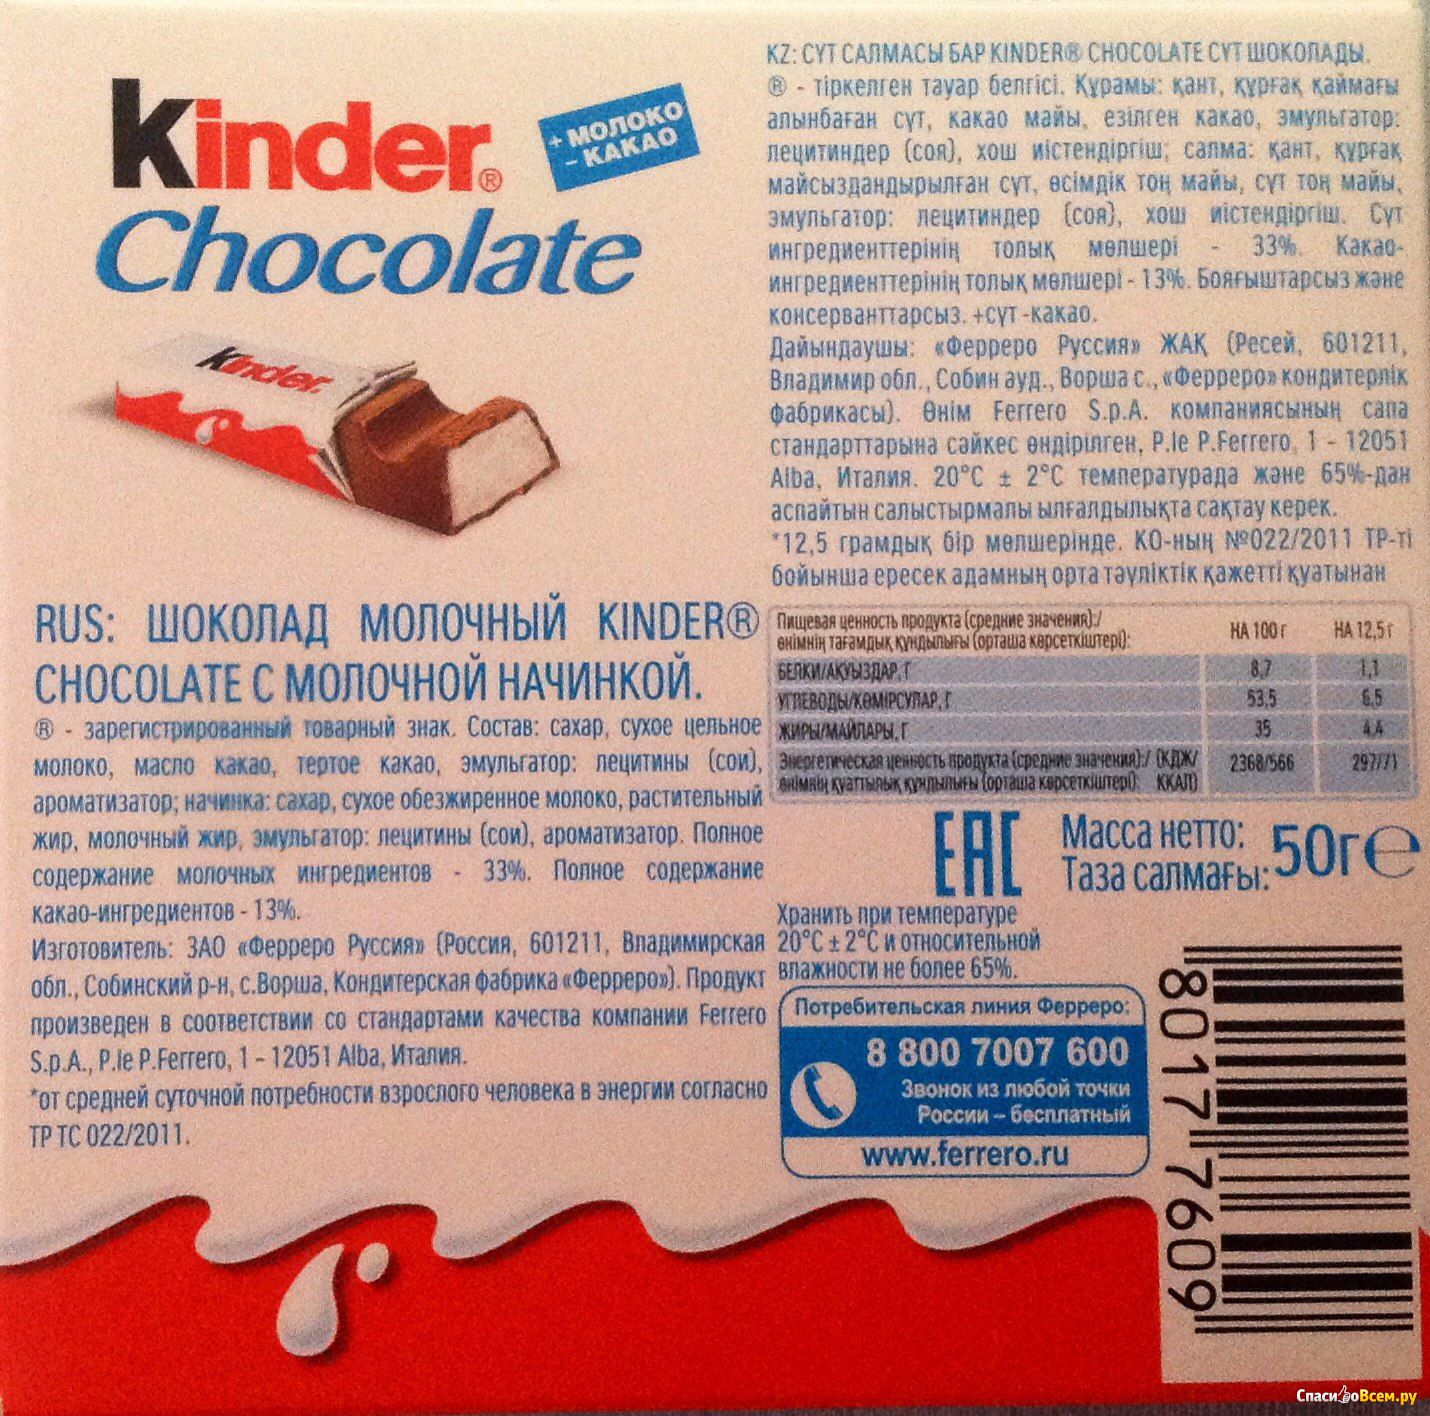 Сколько весит киндер. Киндер шоколад макси вес 1 шоколадки. Киндер шоколад 4 калорийность. Киндер шоколад калорийность 100 грамм.